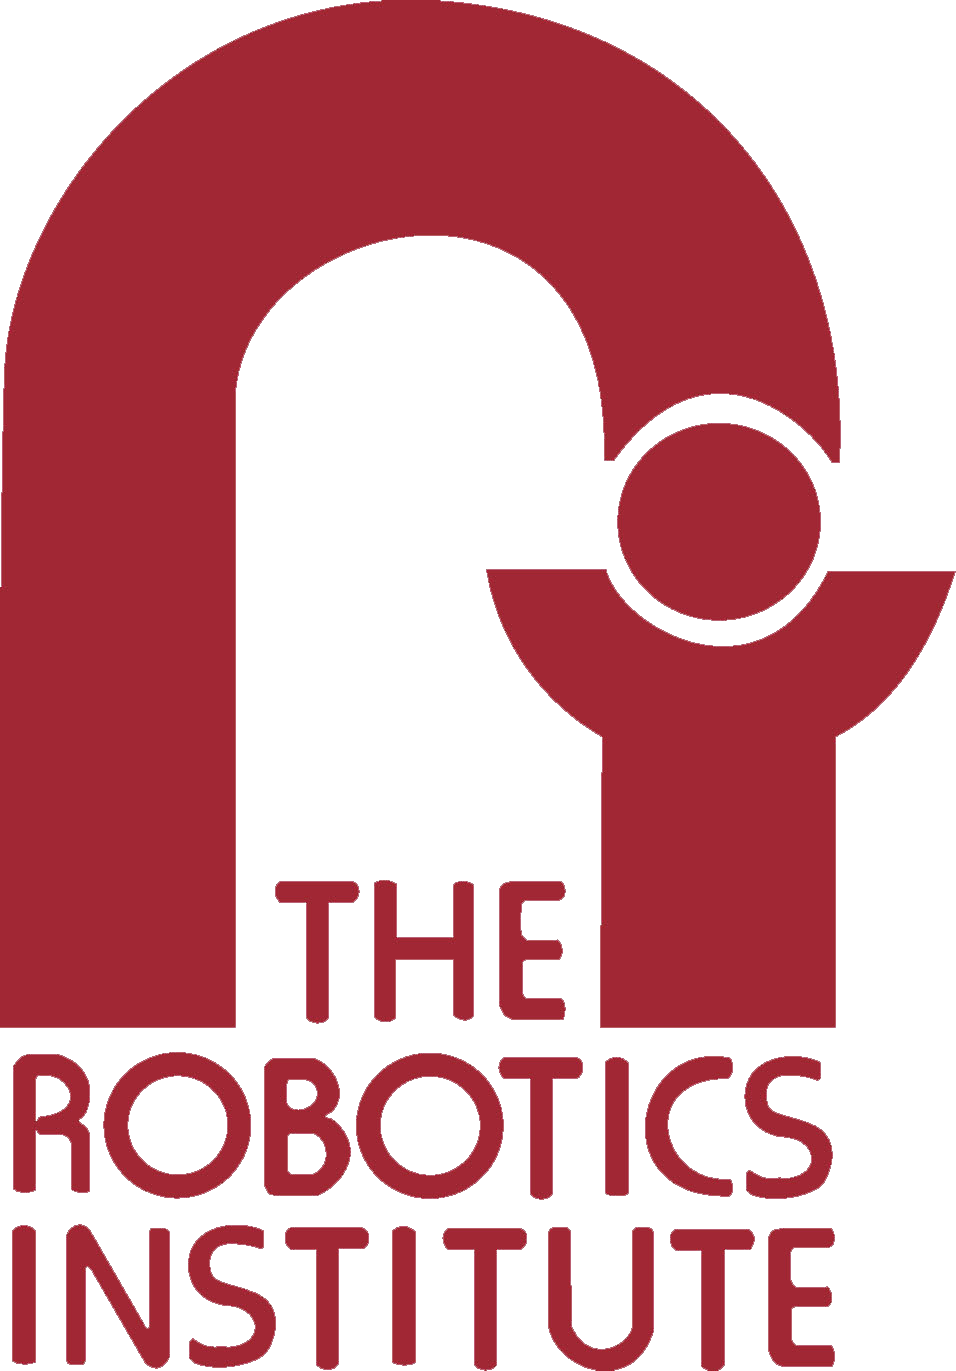 the logo of the robotics institute